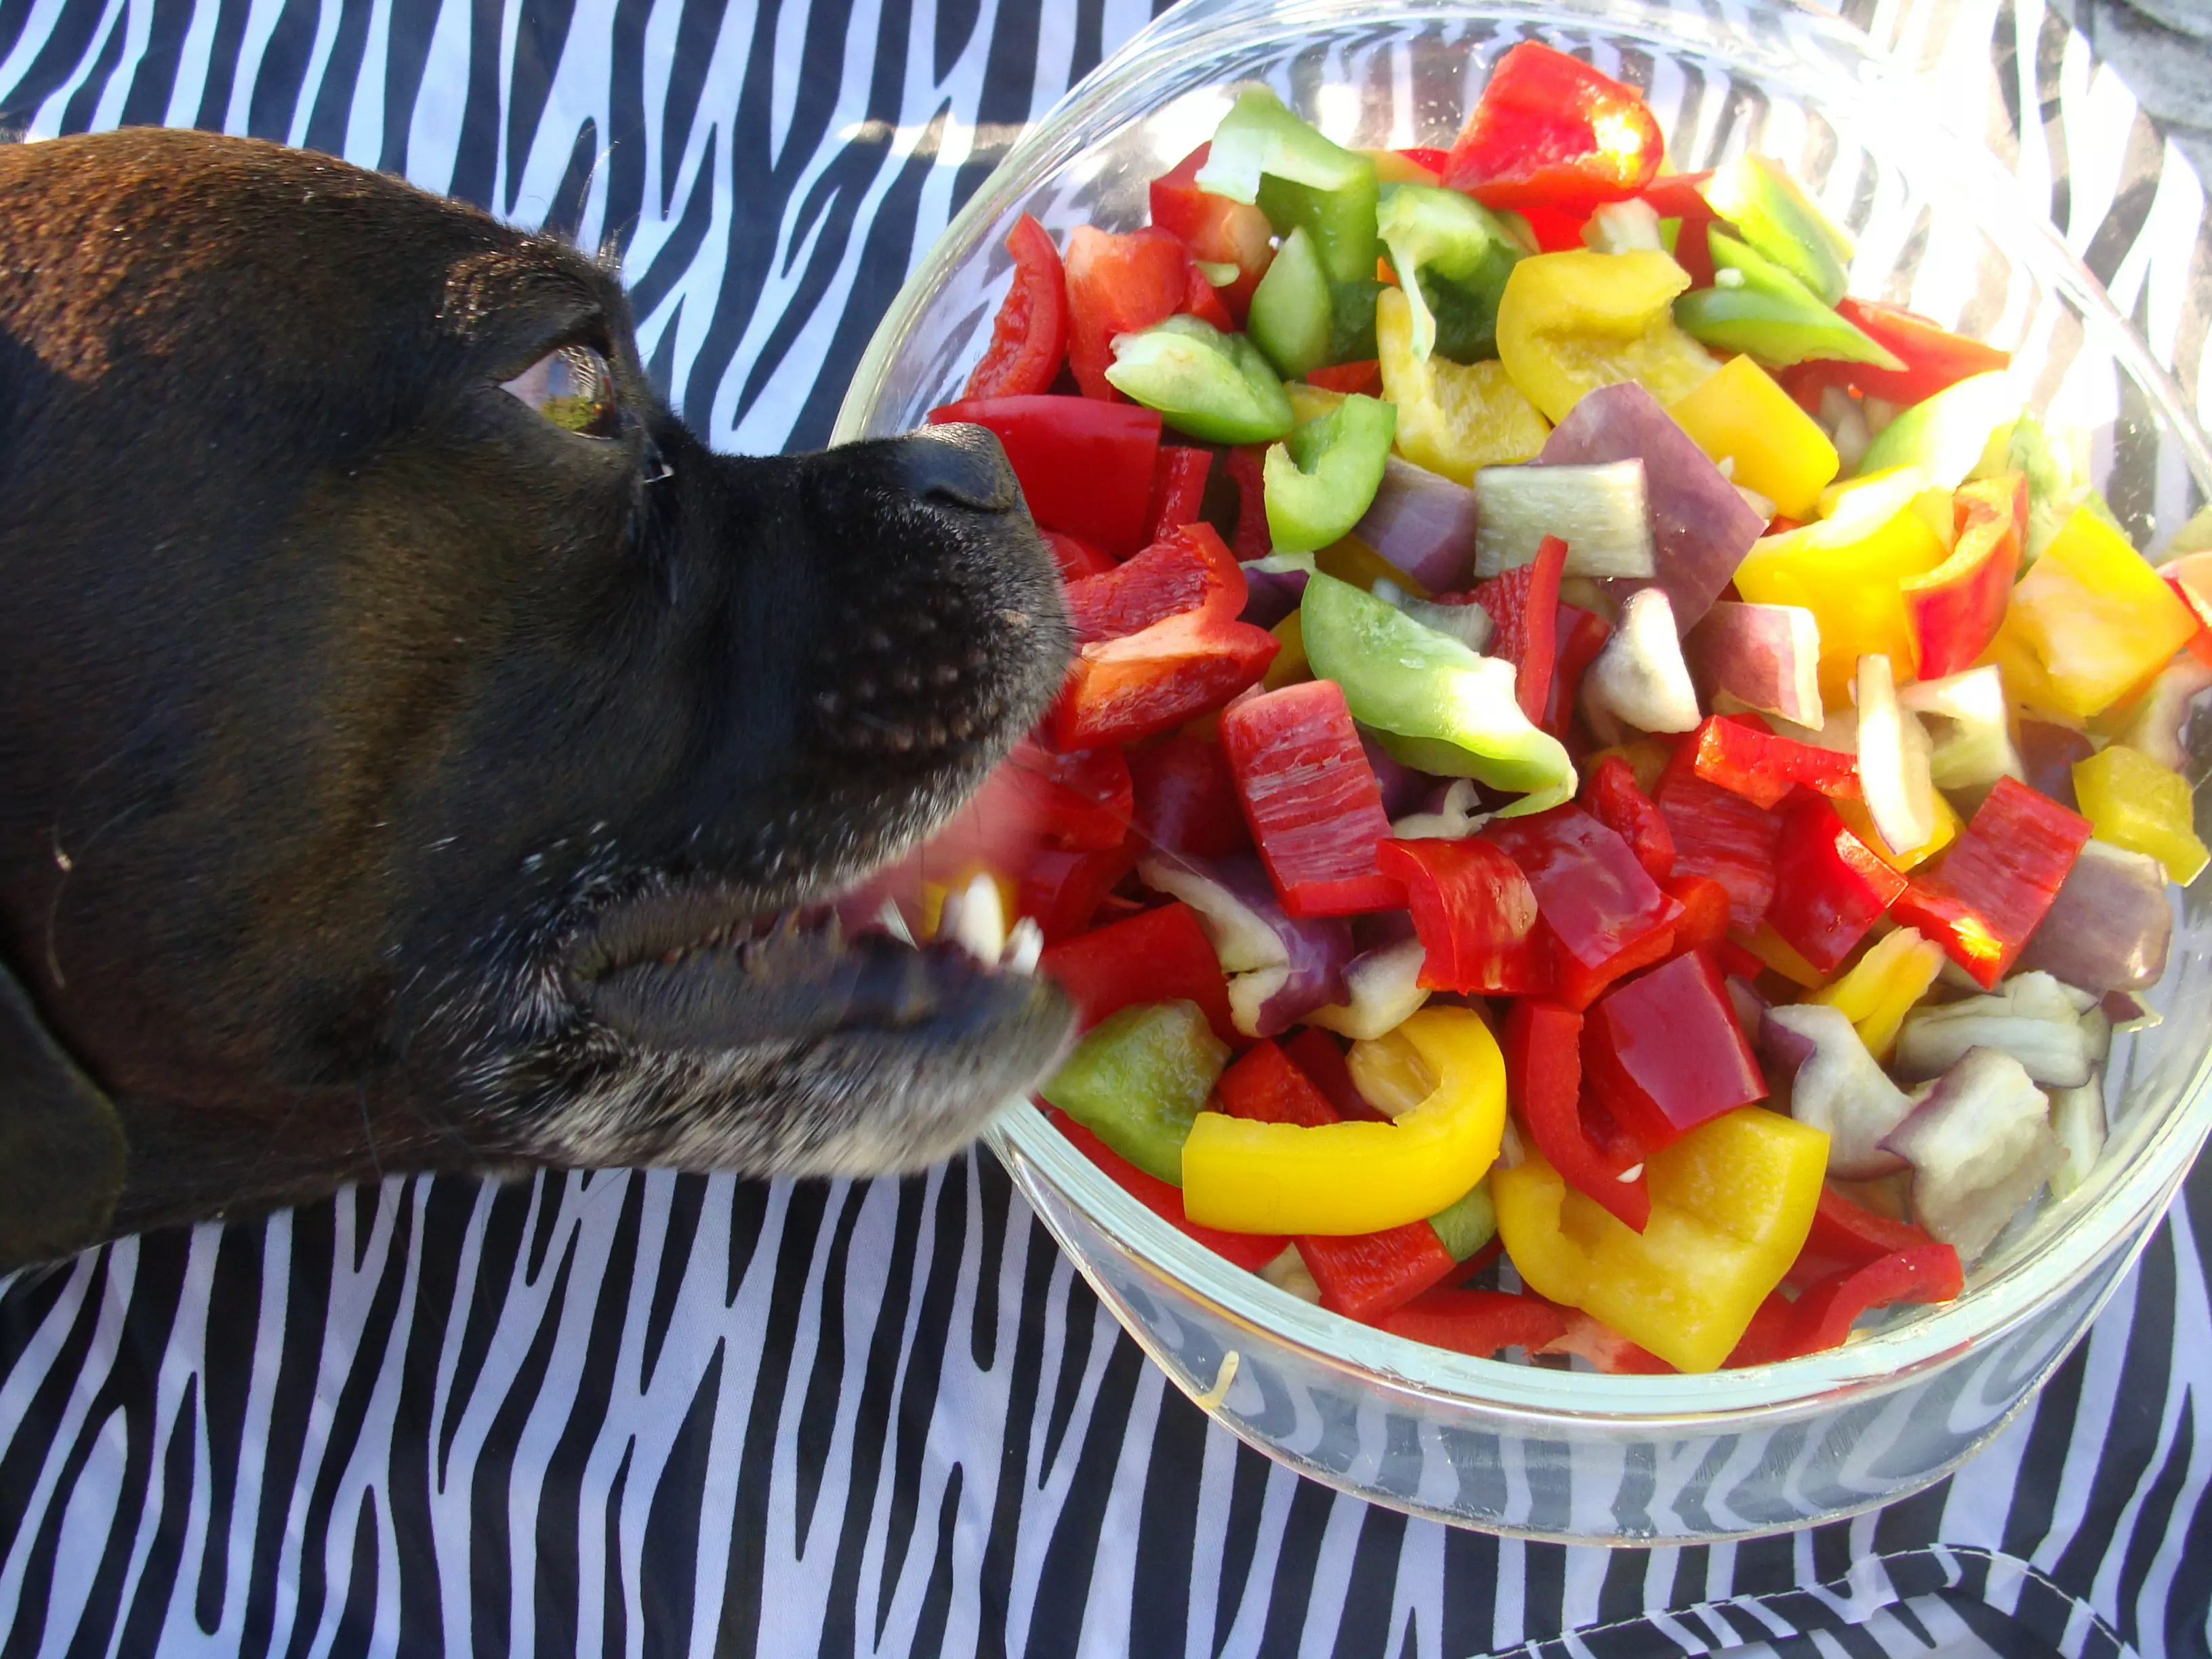 Les chiens peuvent-ils manger des piments ? Les chiens mangent du piment comment faire